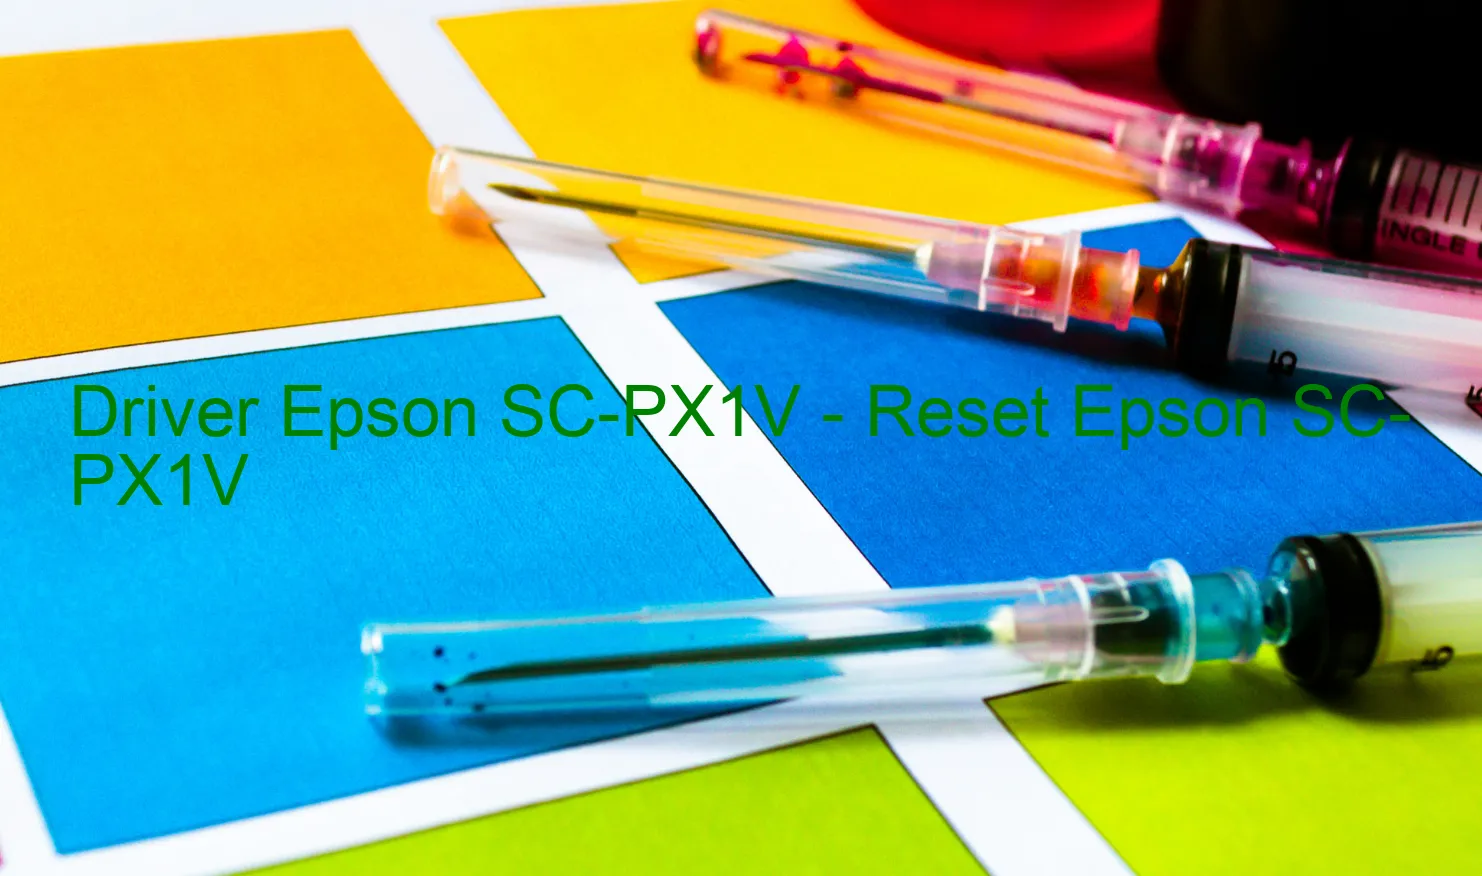 Epson SC-PX1Vのドライバー、Epson SC-PX1Vのリセットソフトウェア